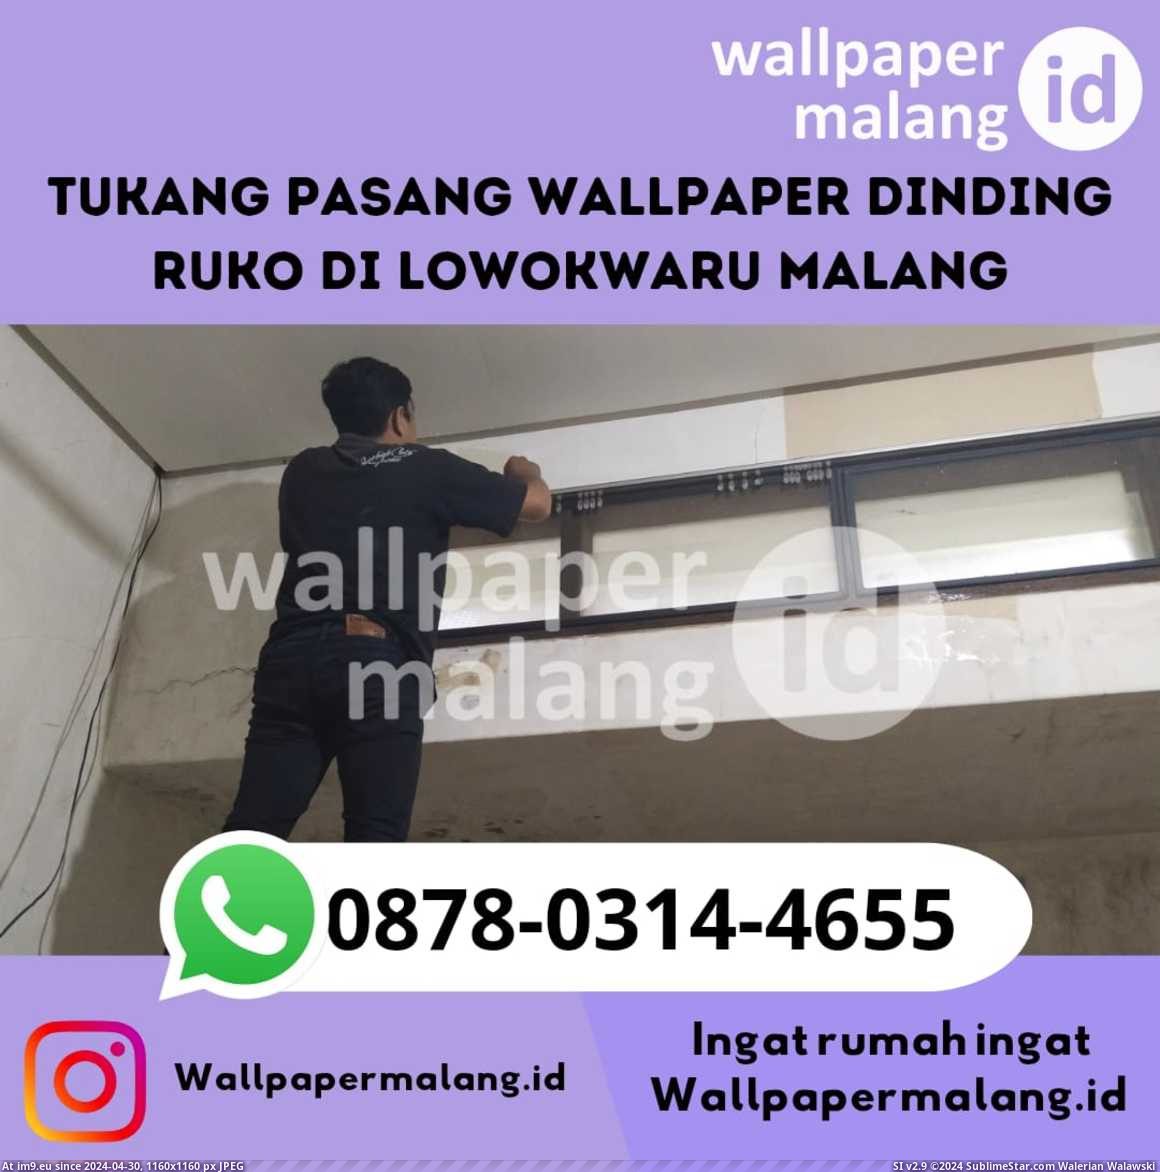 Tukang pasang wallpaper dinding ruko di lowokwaru malang (in Instant Upload)